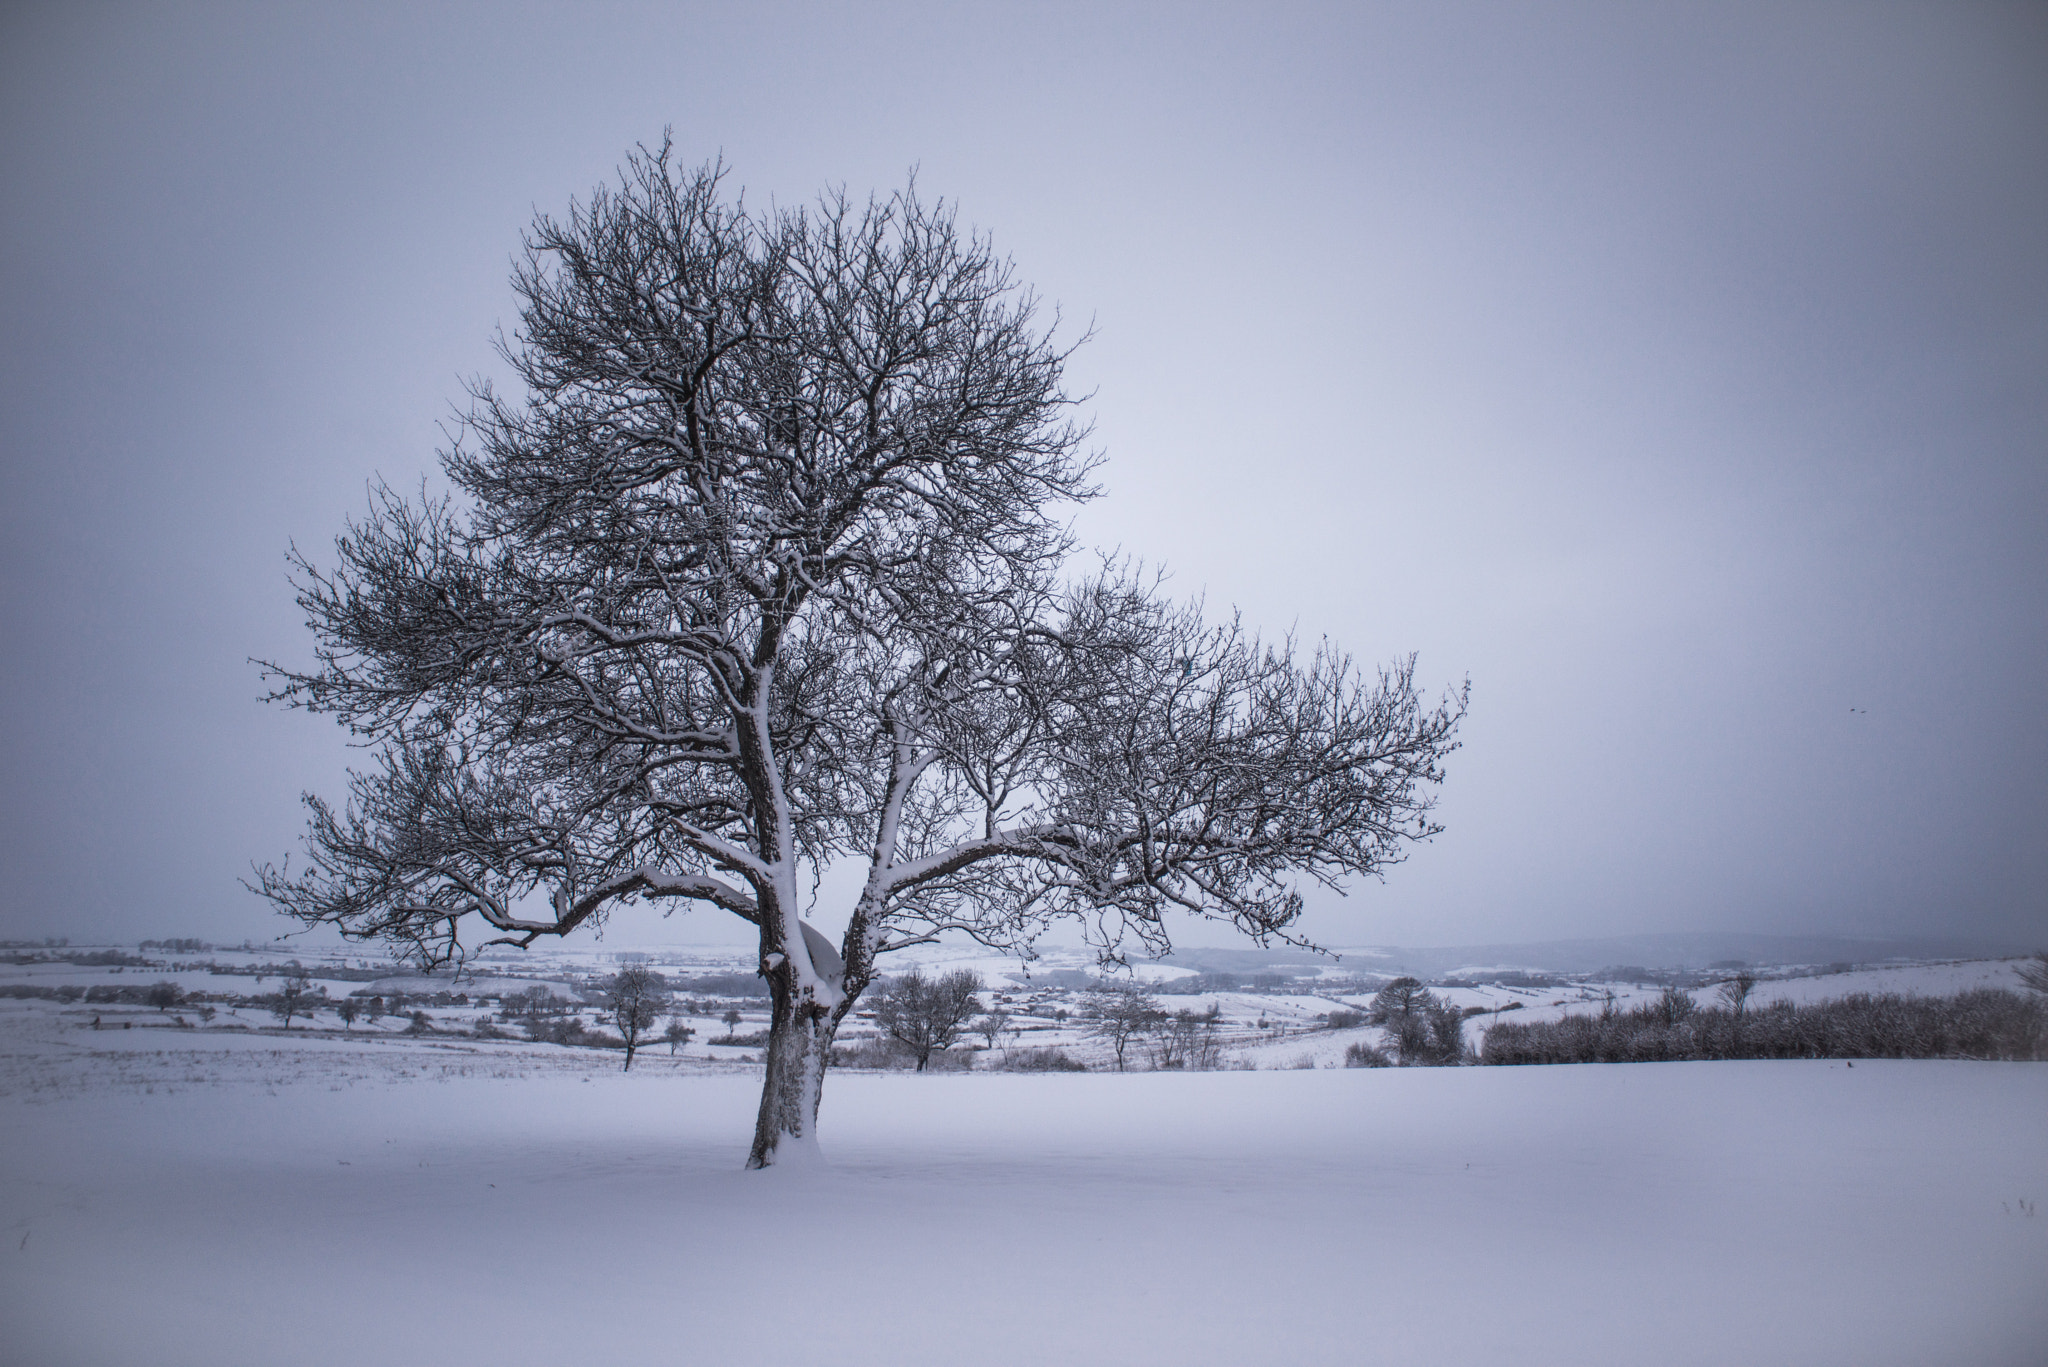 AF Nikkor 20mm f/2.8 sample photo. Tree at winter photography